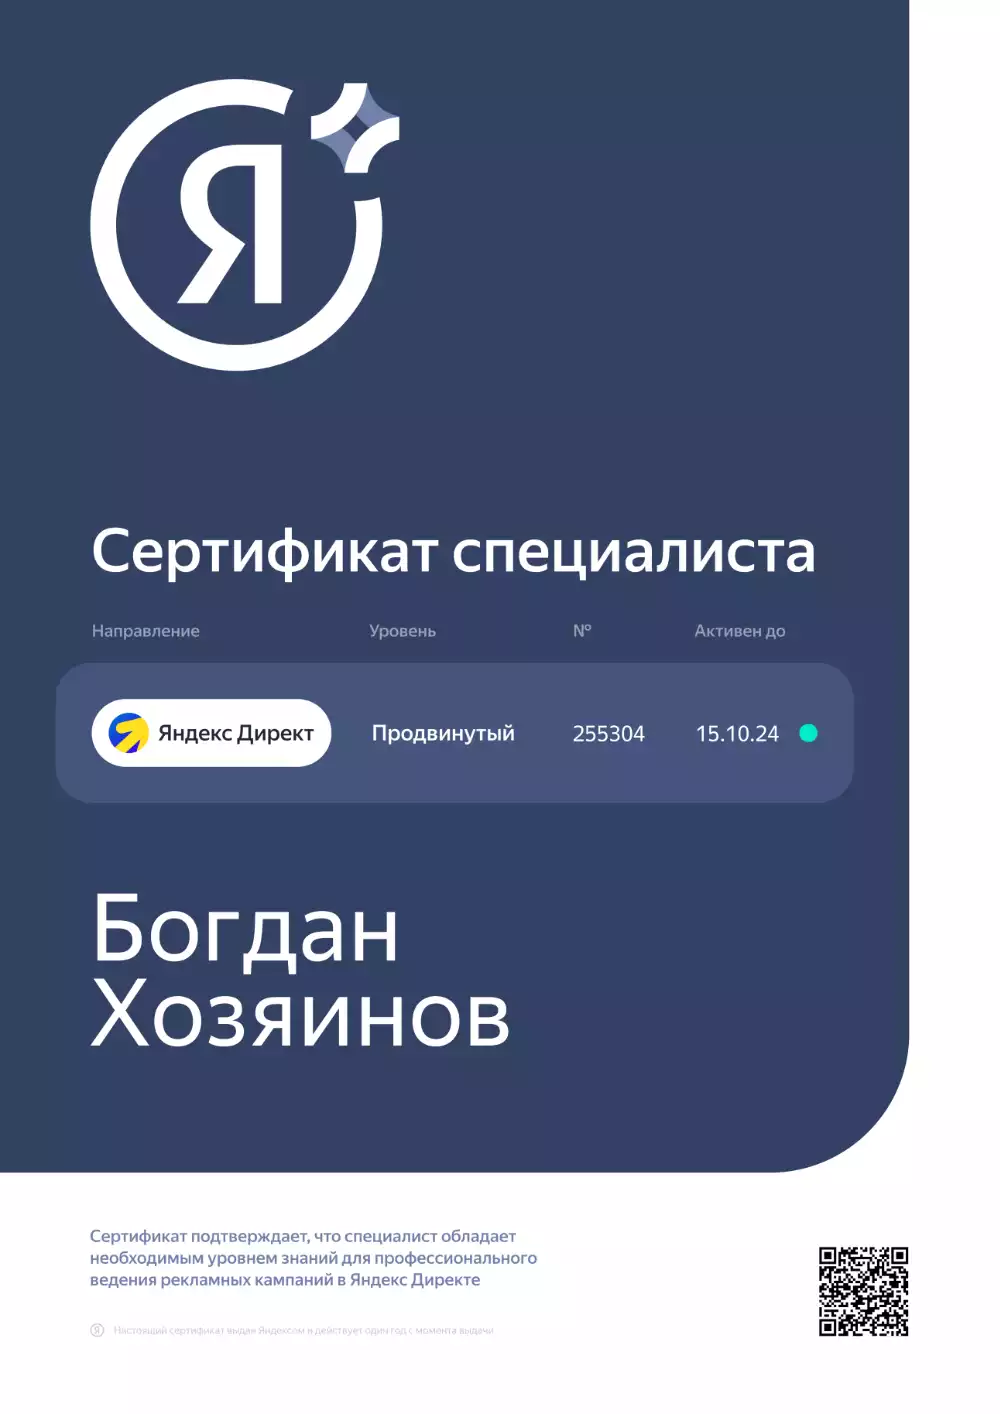 Сертификат специалиста по Яндекс Директу продвинутый уровень